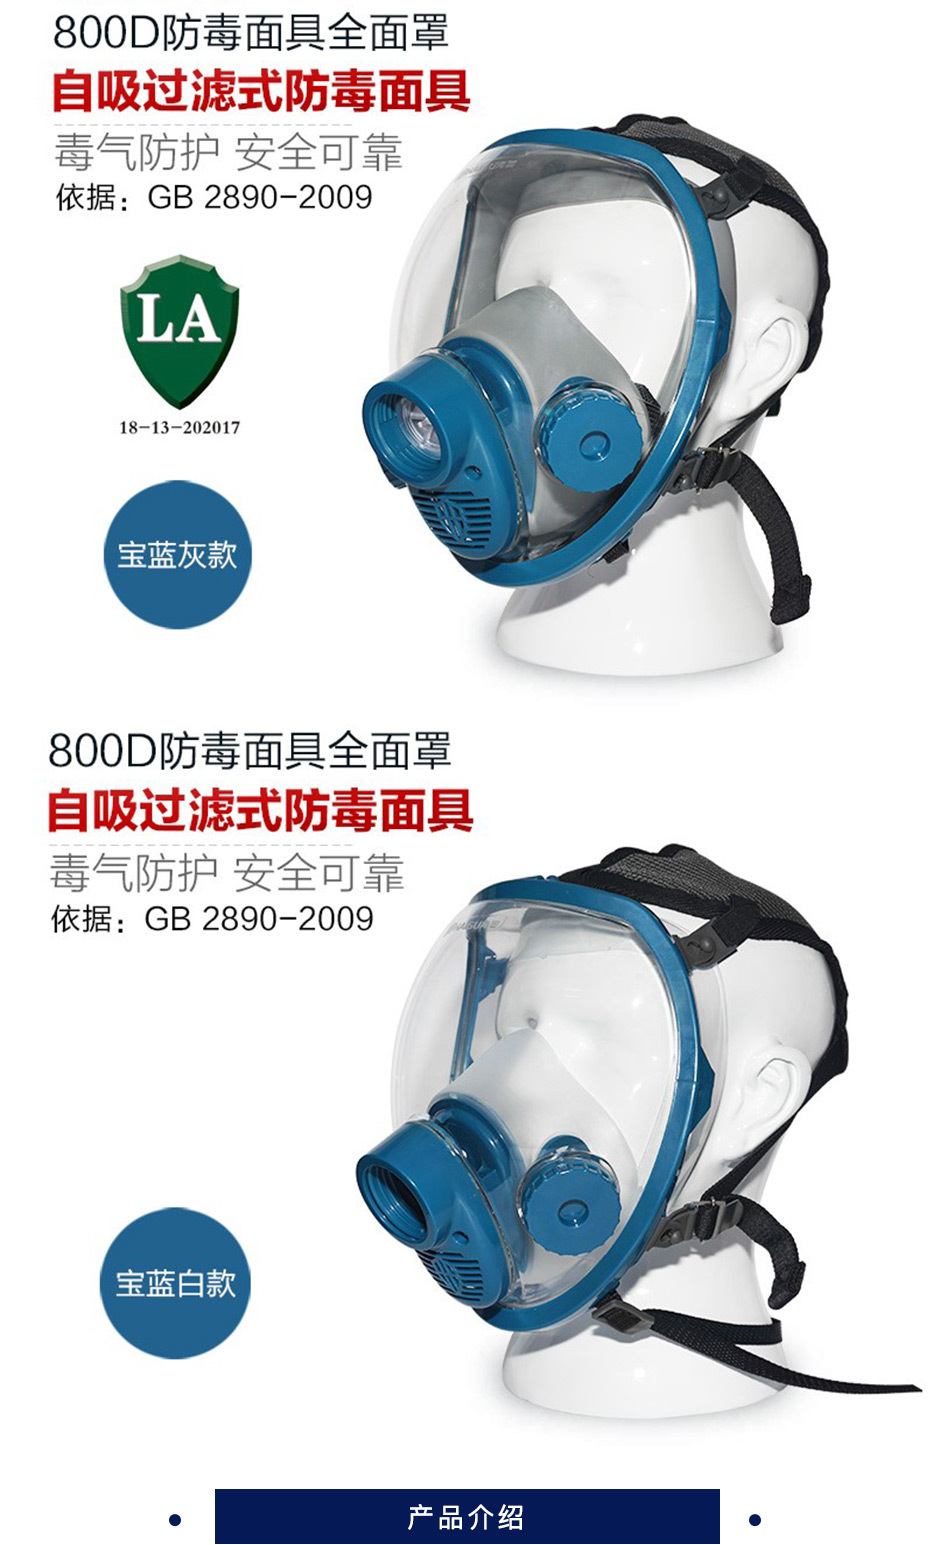 海固 自吸过滤式全面罩防毒面具 HG-800D